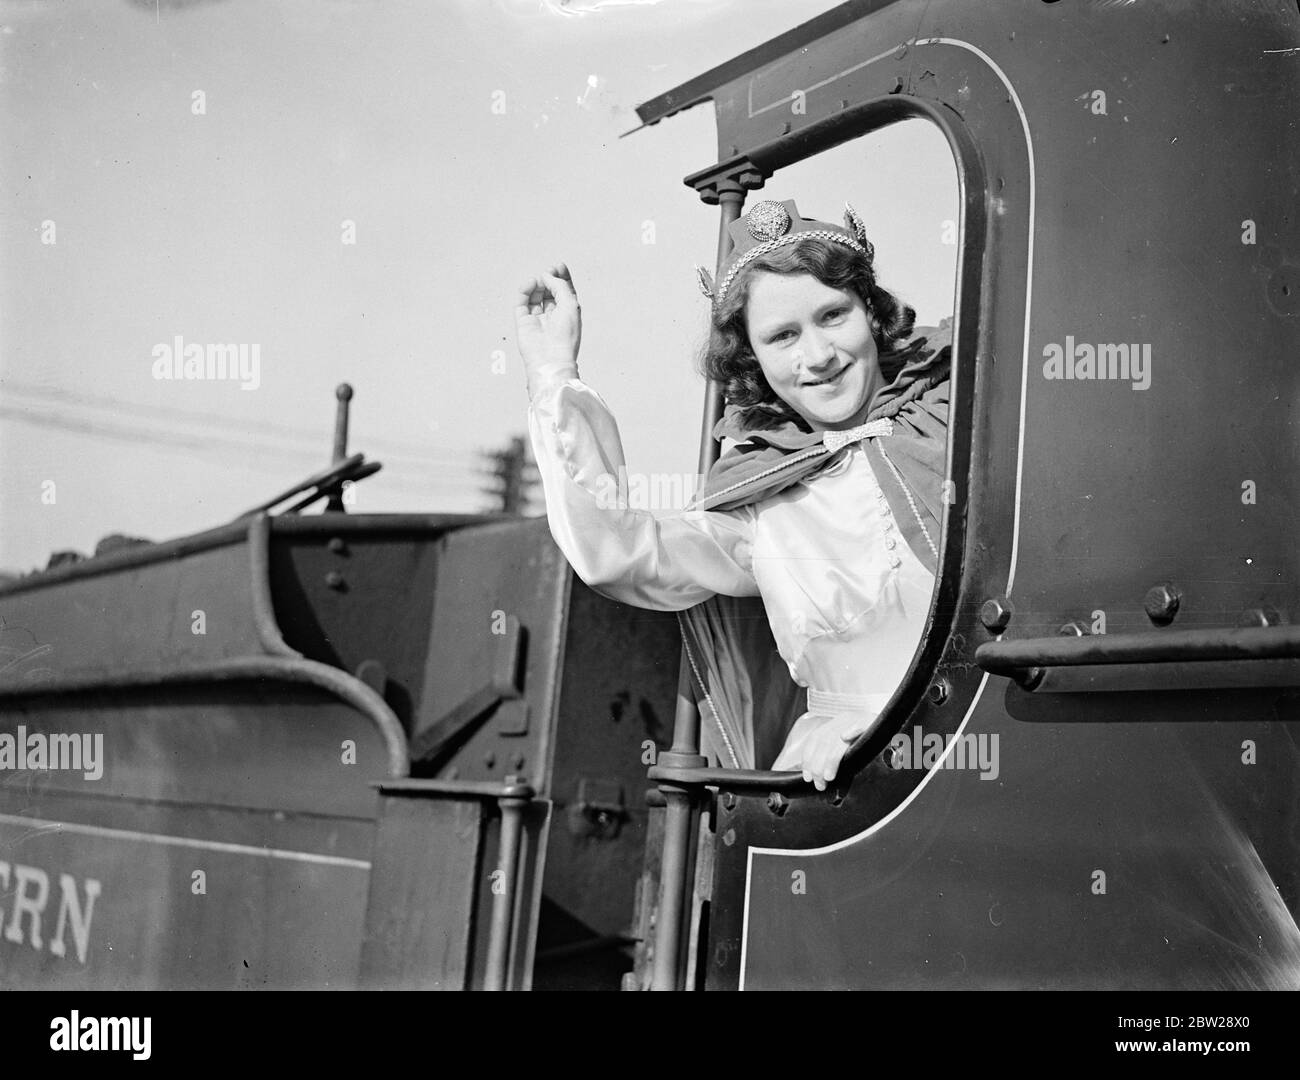 Faversham wählt 15 1/2-jährige Mädchen als ersten 'Eisenbahnanspruch'. 15 die 1/2-jährige Miss Lily Sparrow wurde von Faversham, Kent, als erste Eisenbahnkönigin gewählt, die 1938 den Titel "All England Railway Queen" erhalten hat. Nachdem sie von der Frau der Faversham Stationmaster, Frau W Robins, gekrönt wurde, nimmt sie an der jährlichen Karnevalsprozession Teil. November 1937 Stockfoto